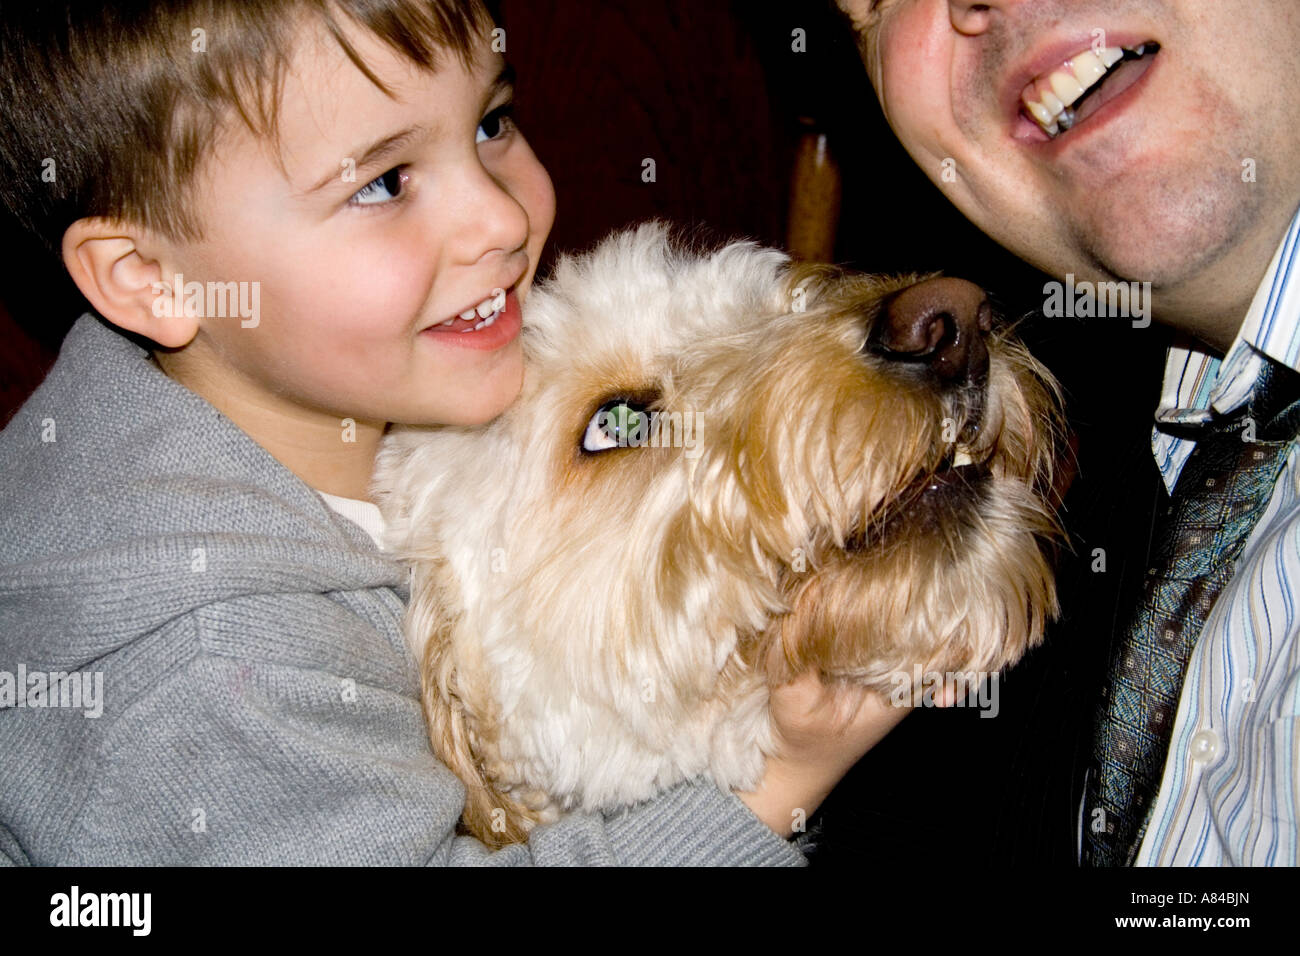 Fils et papa 37 ans et 4 jouant avec l'Artilleur l'animal Goldendoodle chien. T 'Paul' Minnesota USA Banque D'Images